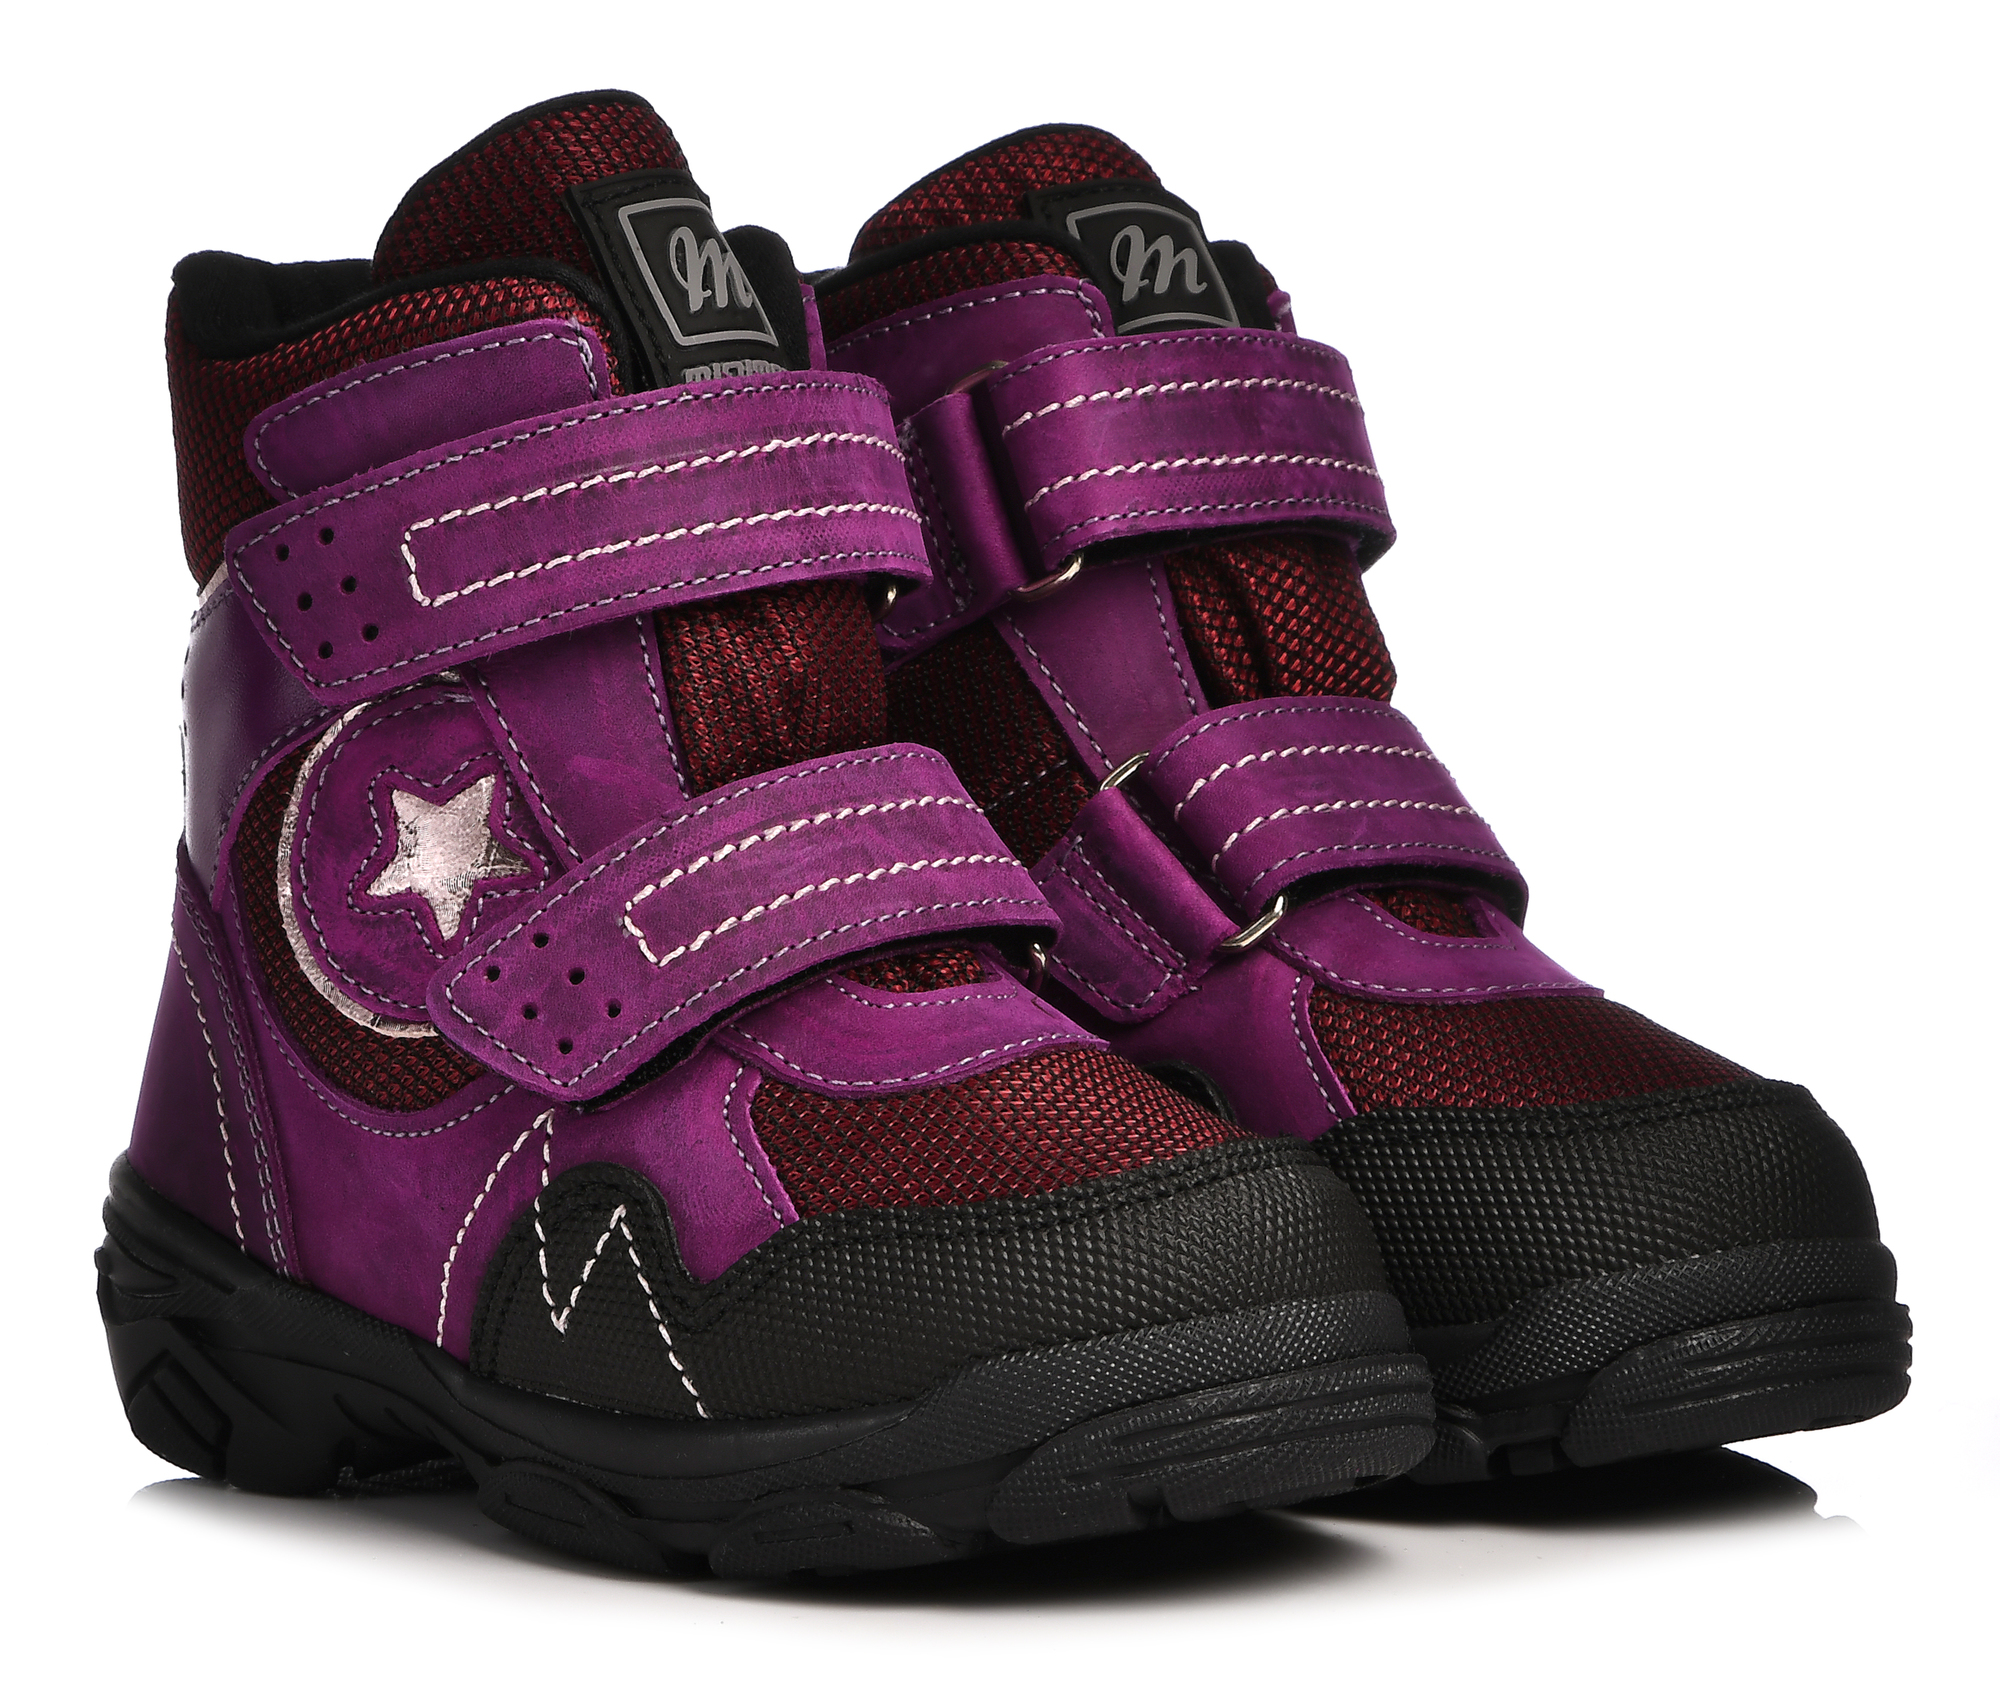 Ботинки Minimen для девочек, сиреневые, размер 30, 2658-63-23B-04 minimen ботинки 2184